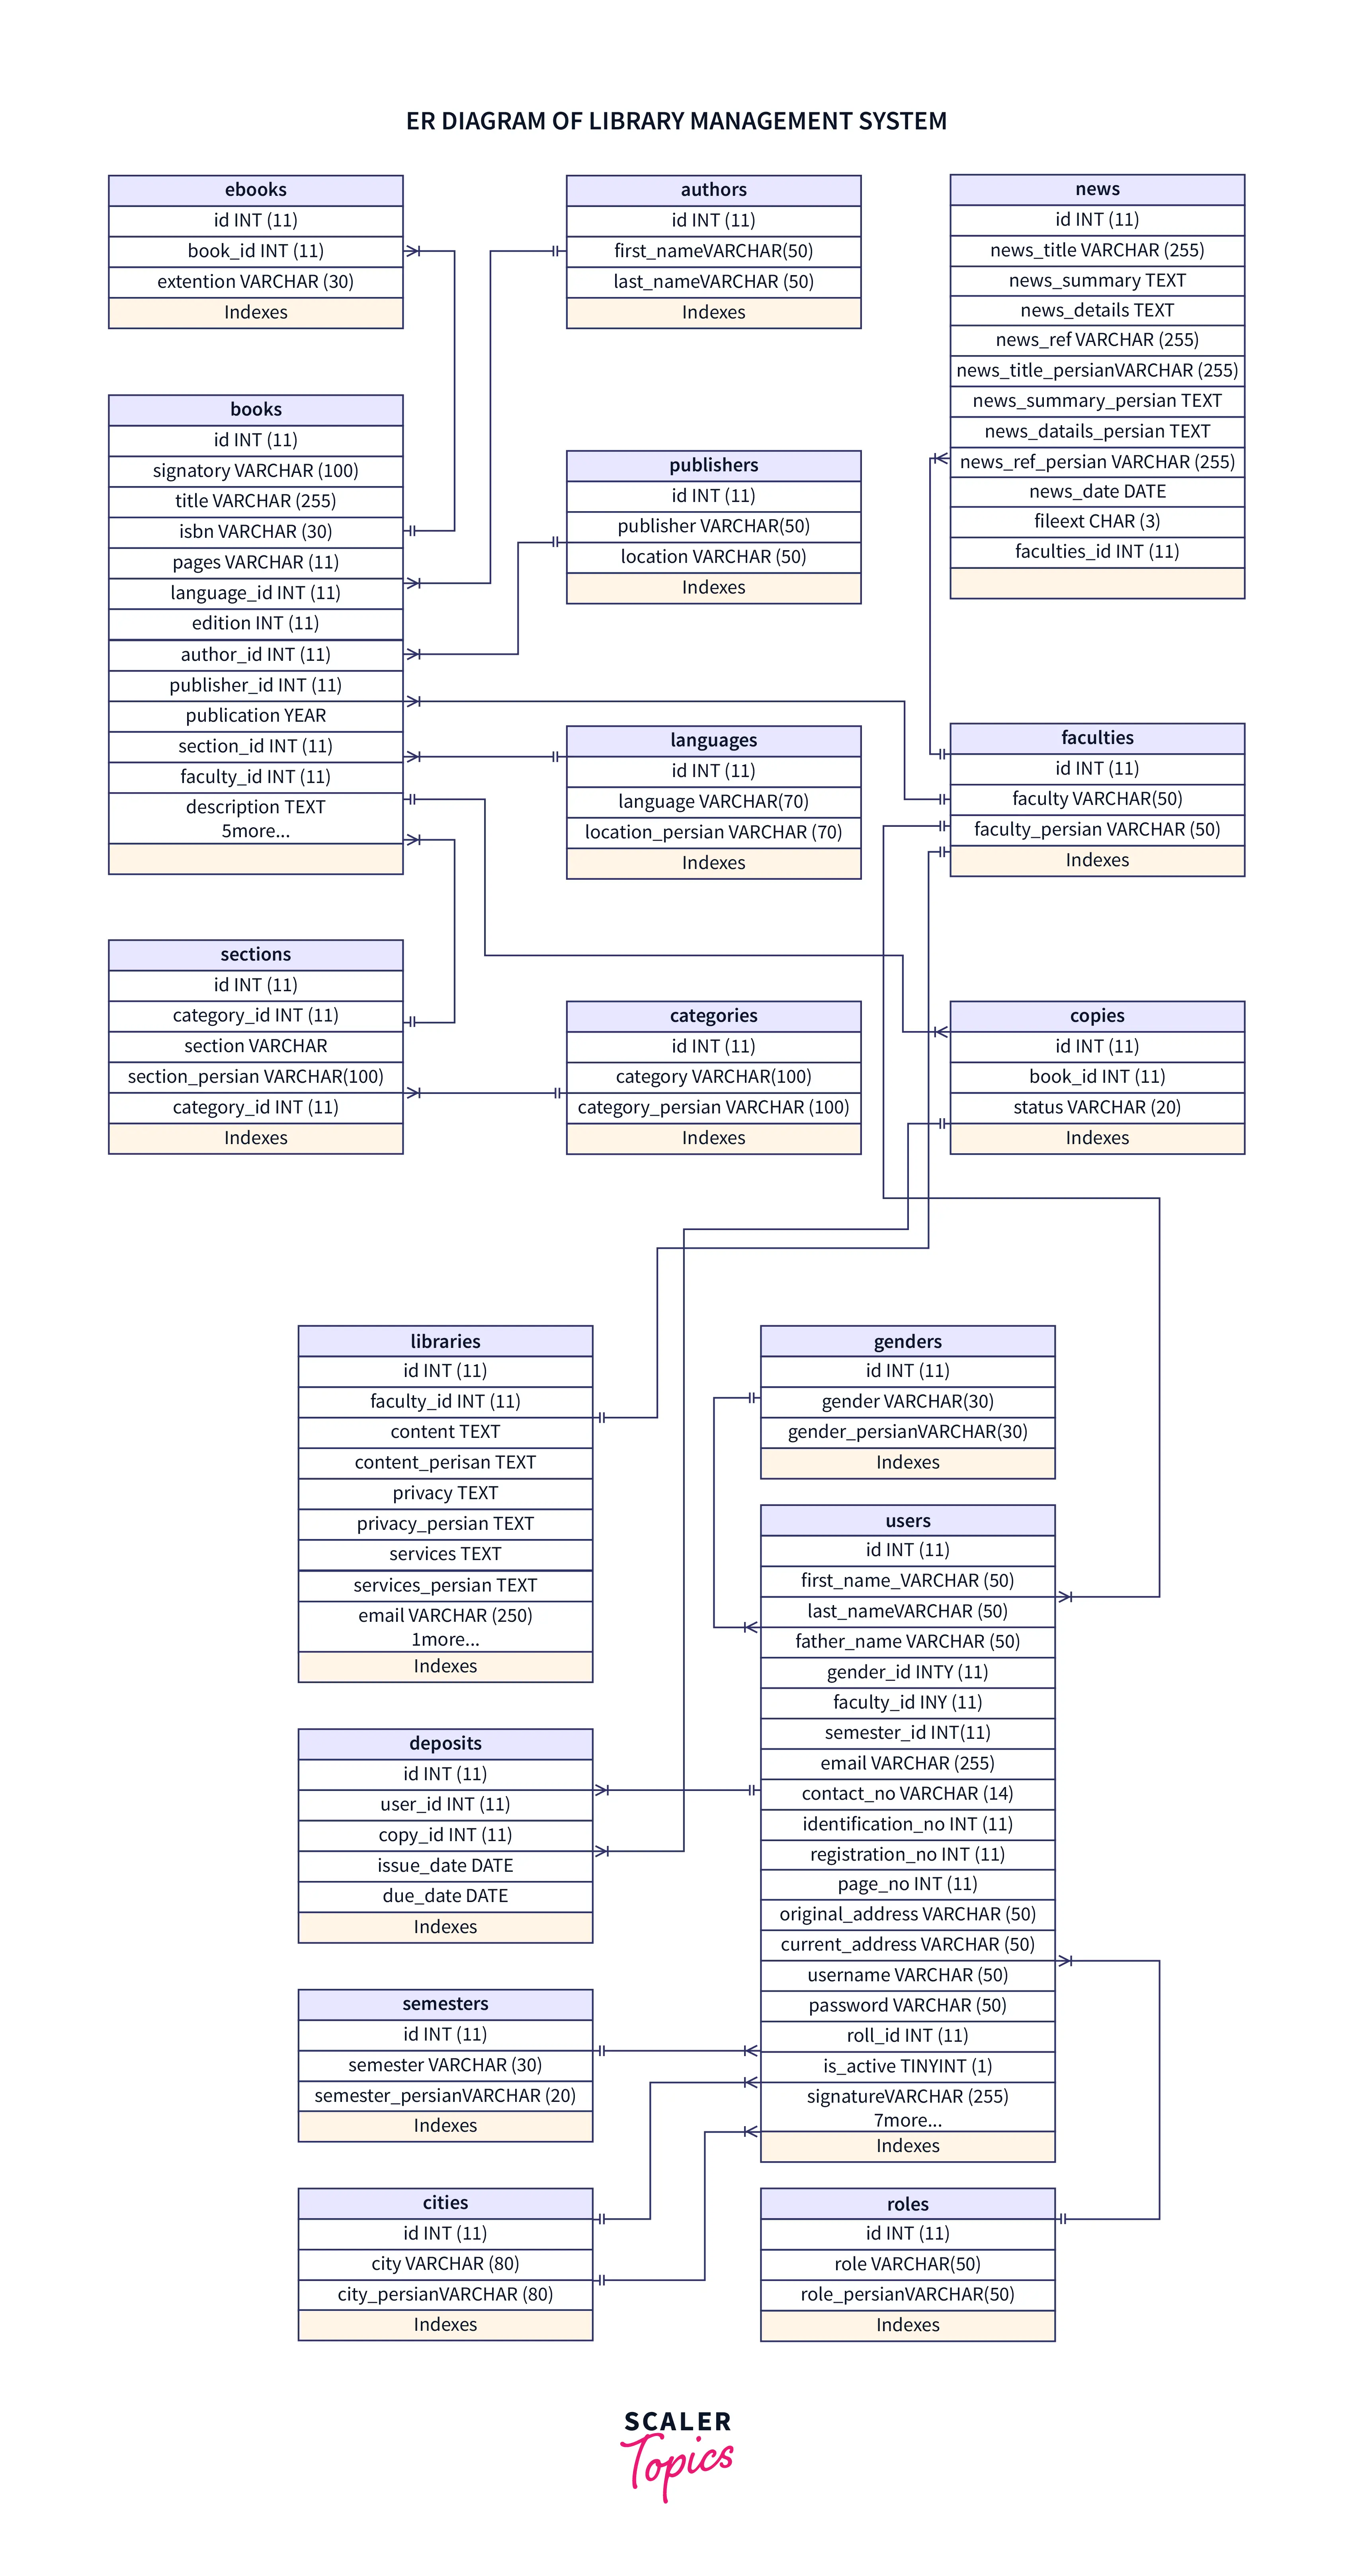 comprehensive-er-diagram-library-management-system